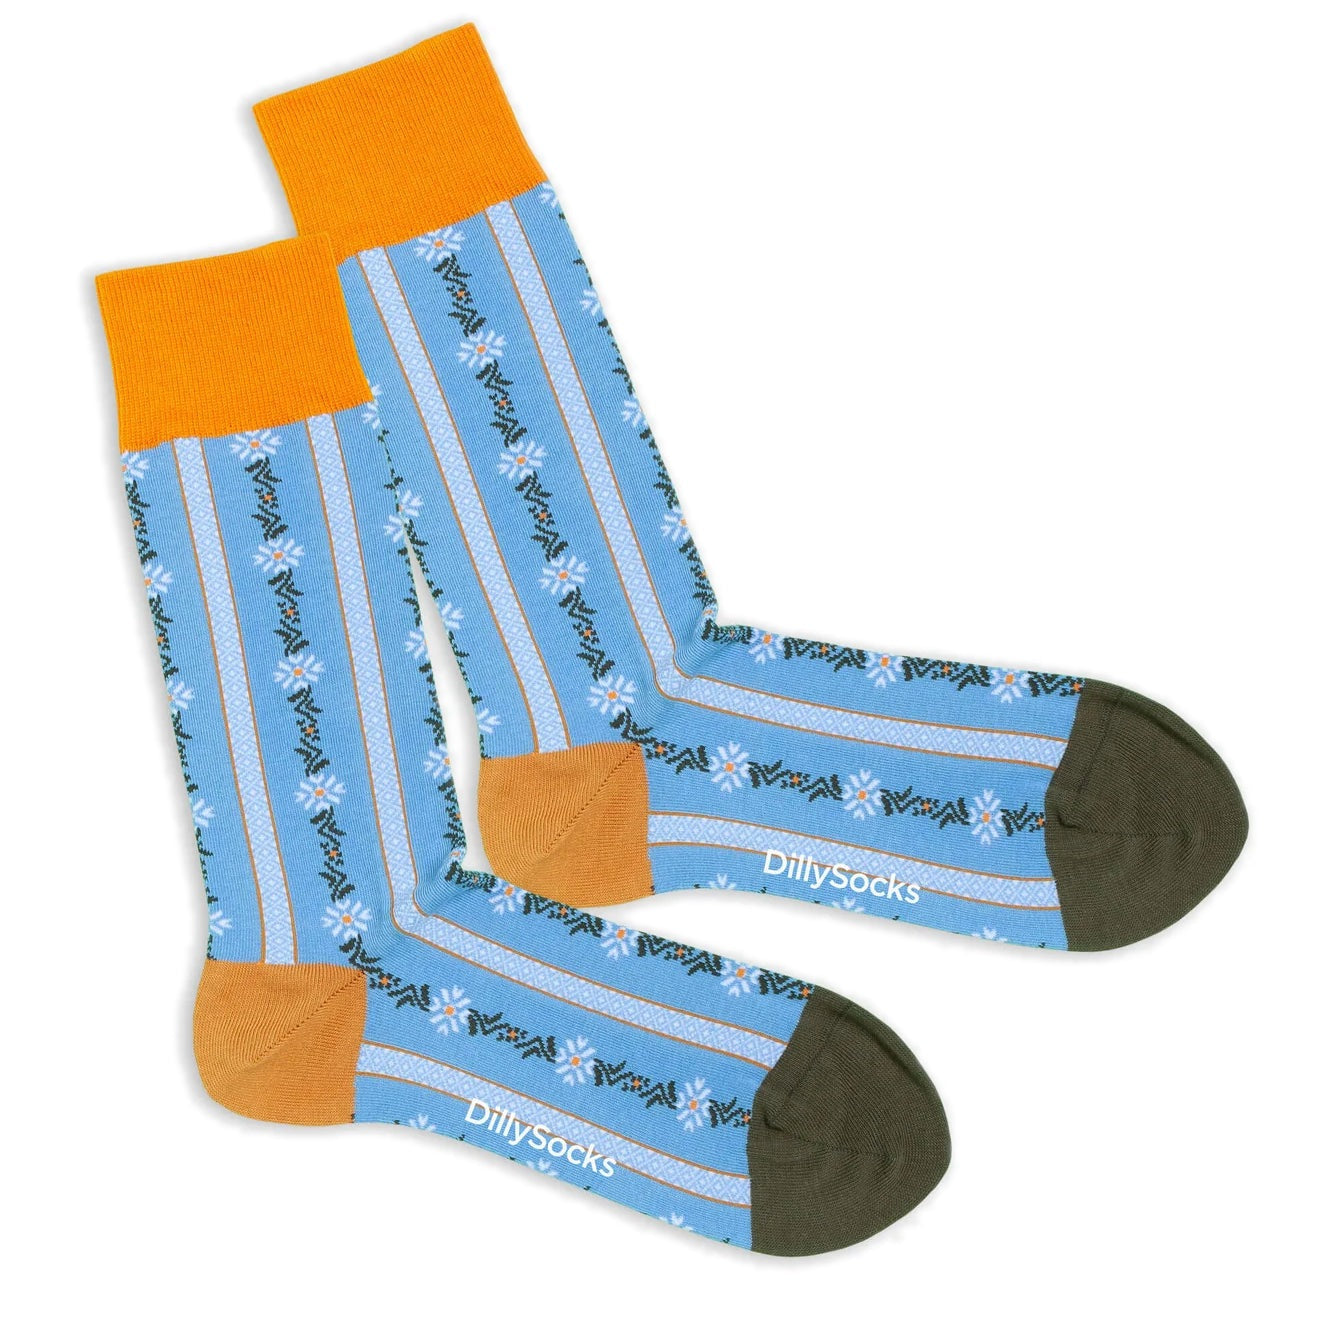 Edelweiss socks